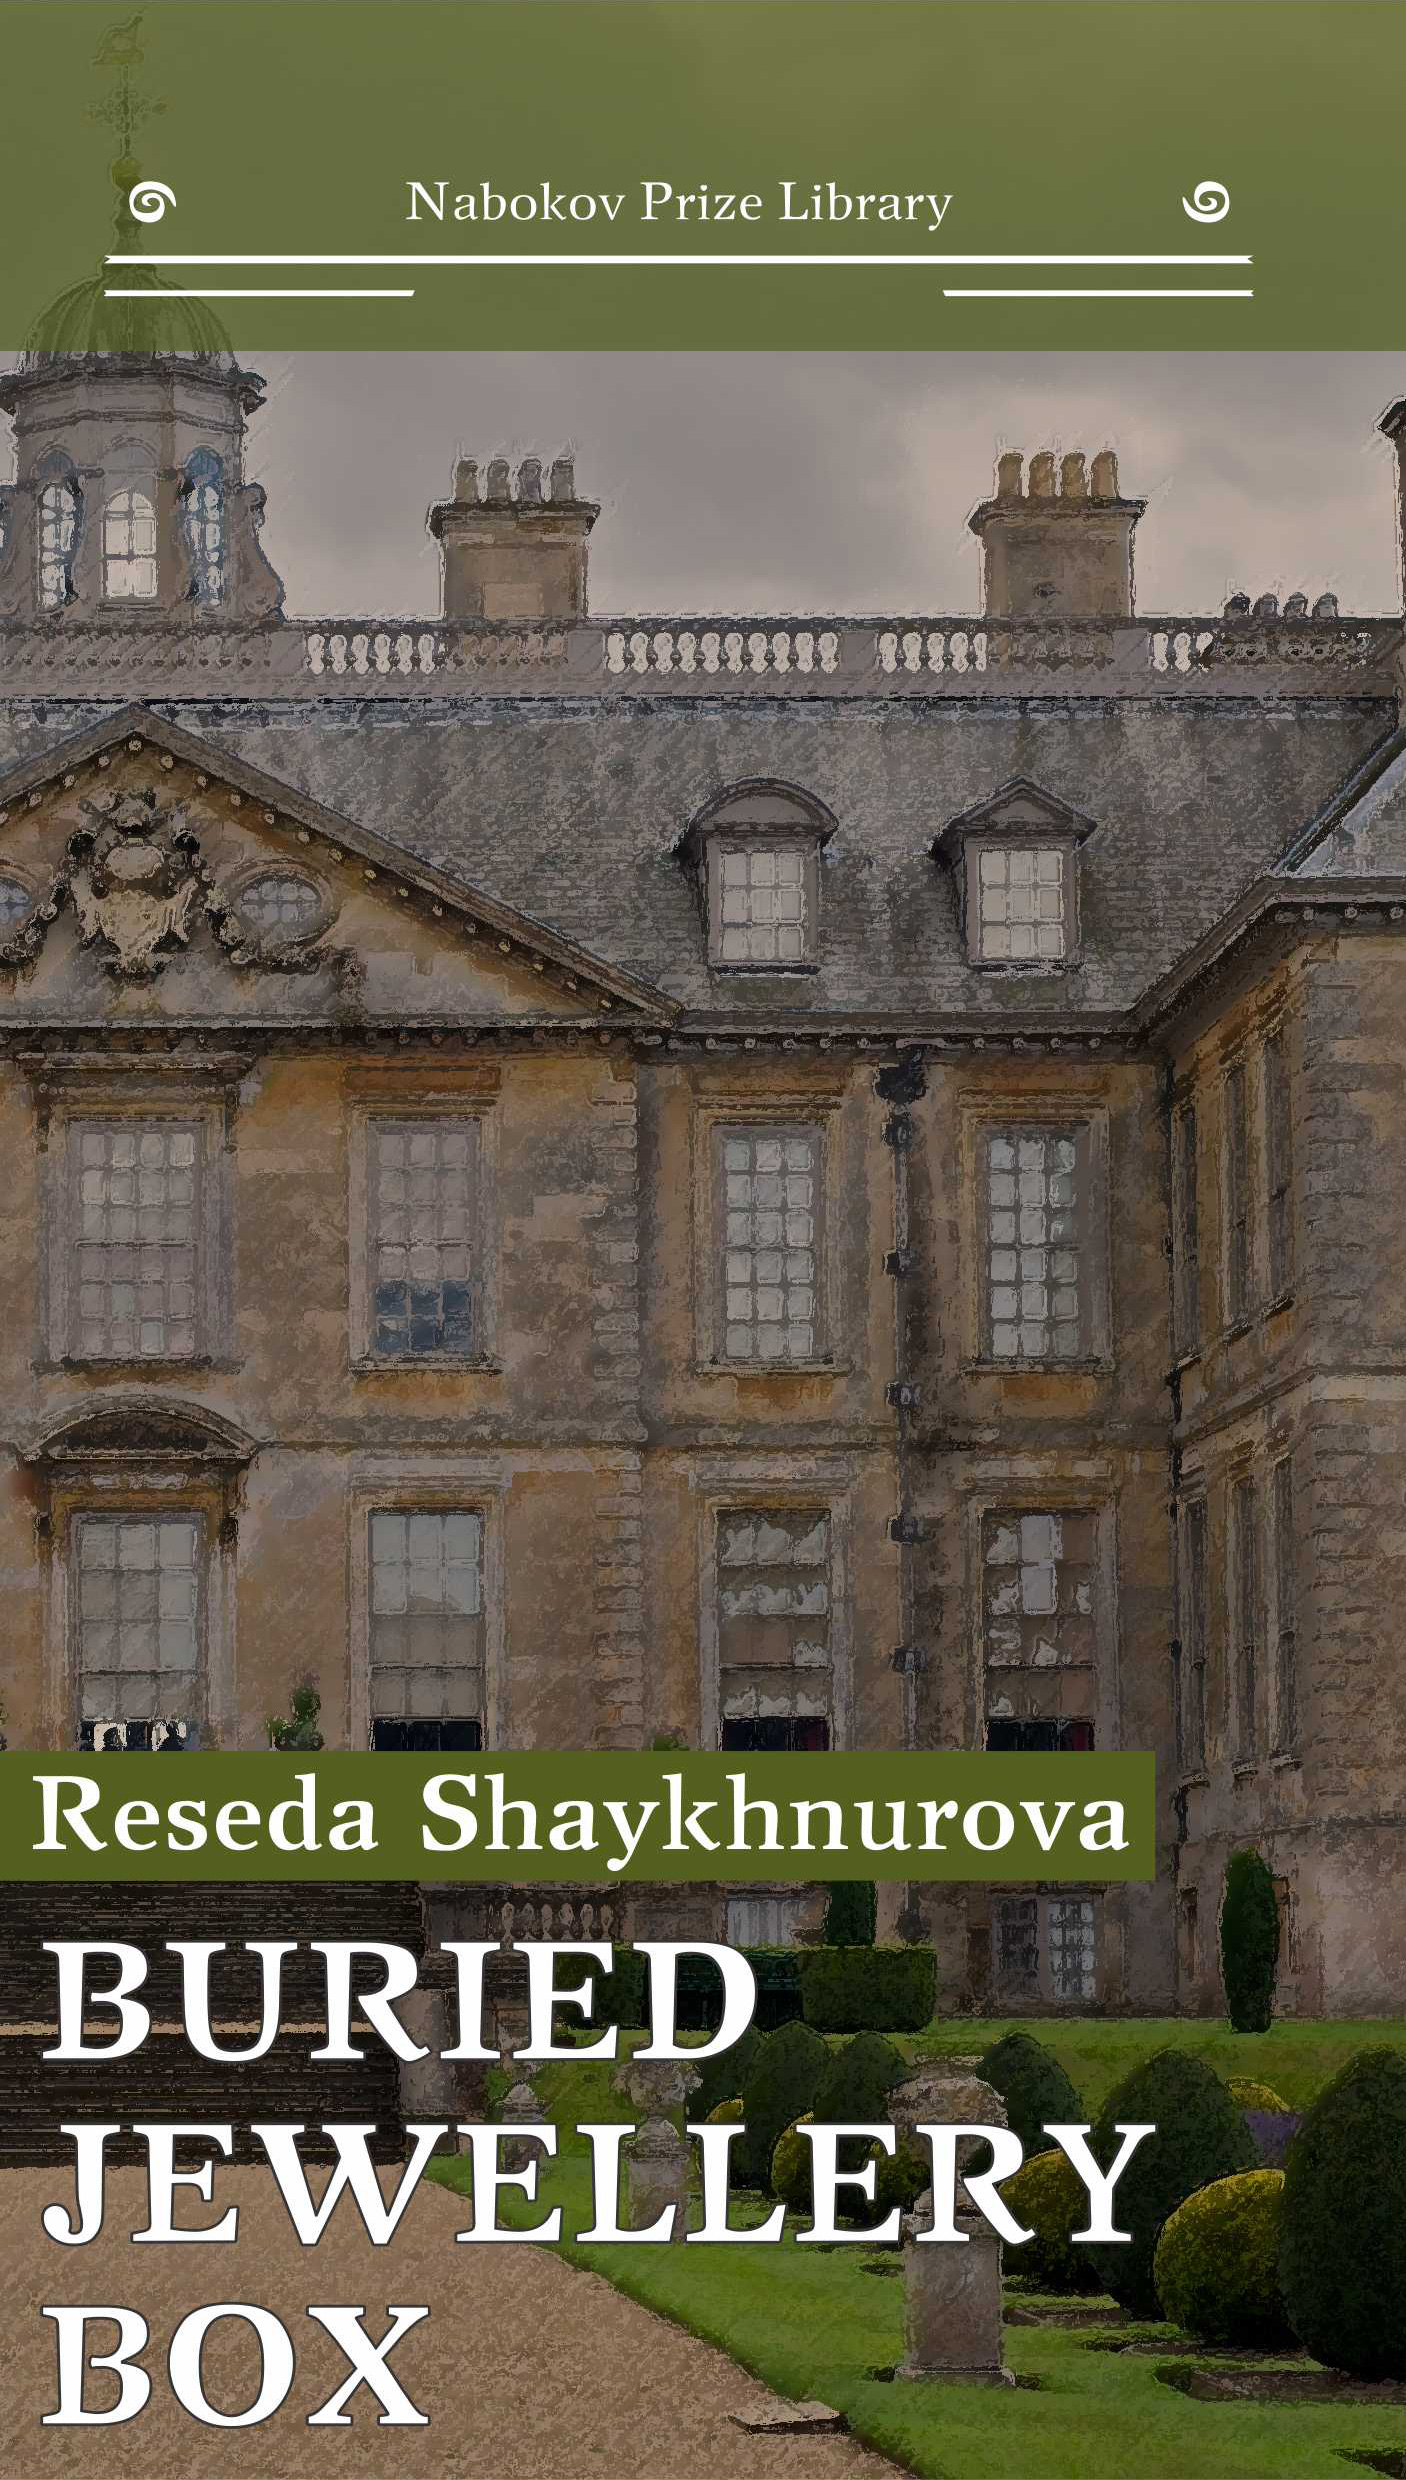 Книга Buried Jewellery Box из серии Nabokov Prize Library, созданная Reseda Shaykhnurova, может относится к жанру Историческая литература, Иностранные языки. Стоимость электронной книги Buried Jewellery Box с идентификатором 26336332 составляет 89.90 руб.